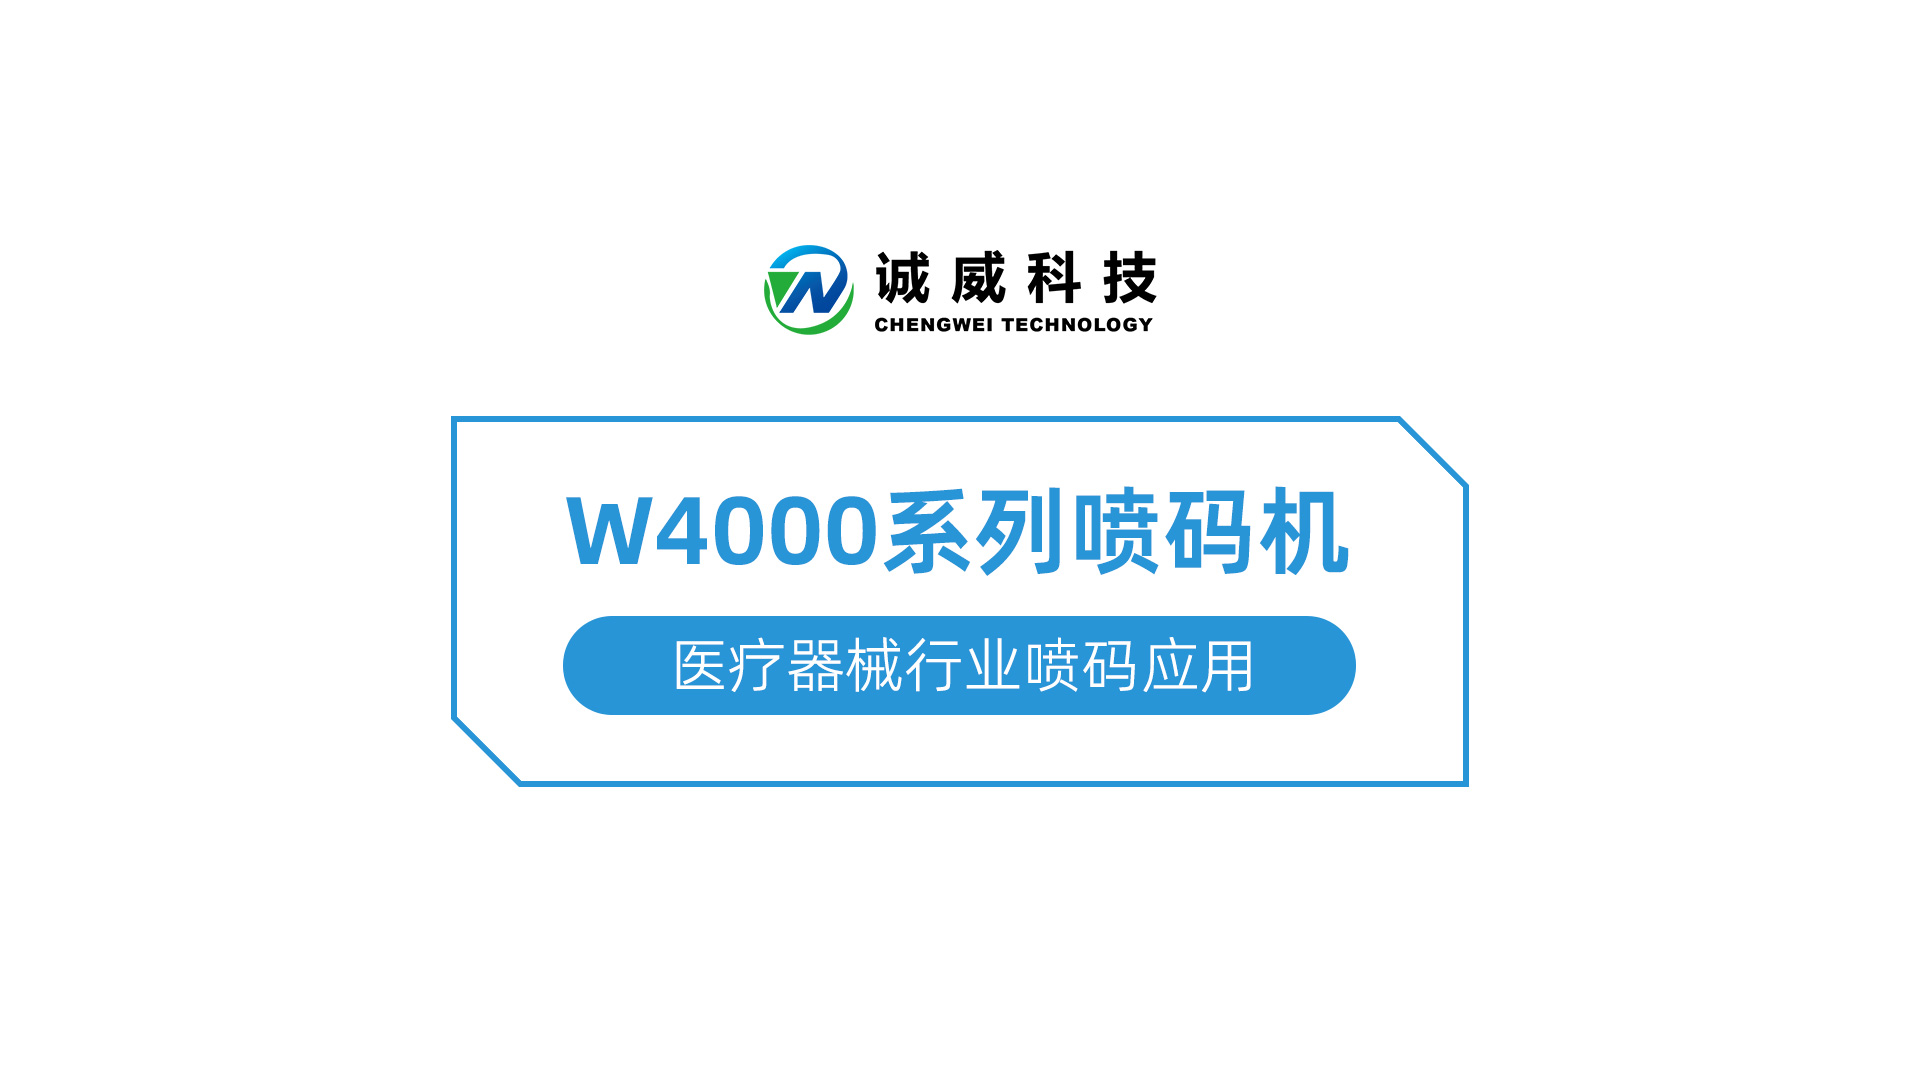 W4000系列喷码机-医疗器械行业喷码应用.jpg